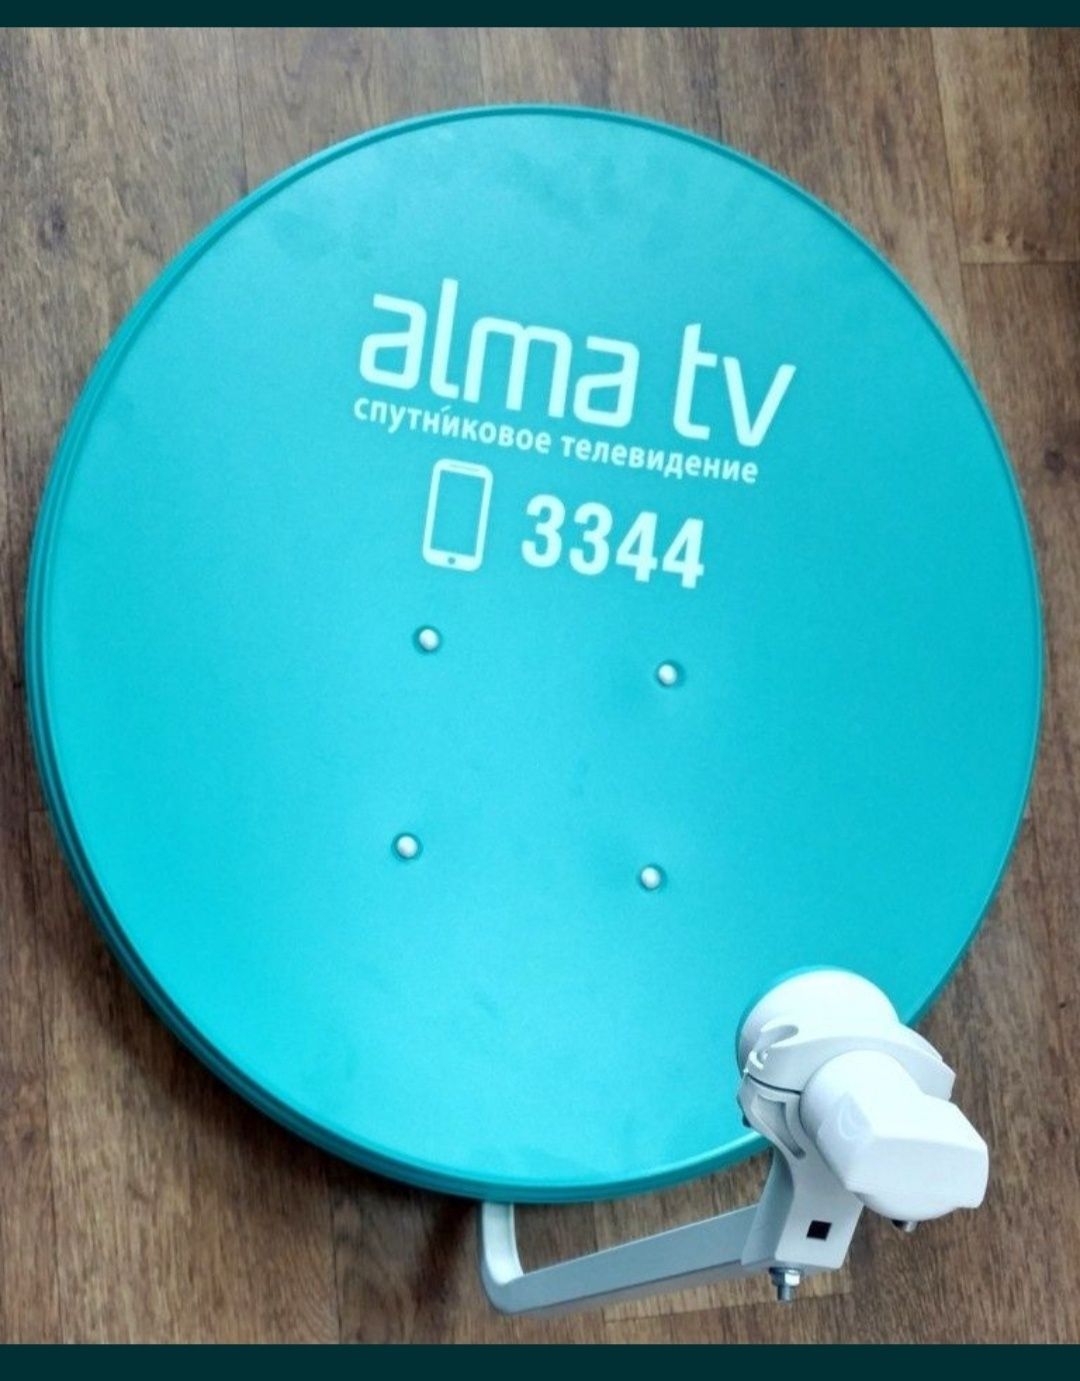 otau TV Alma TV установка